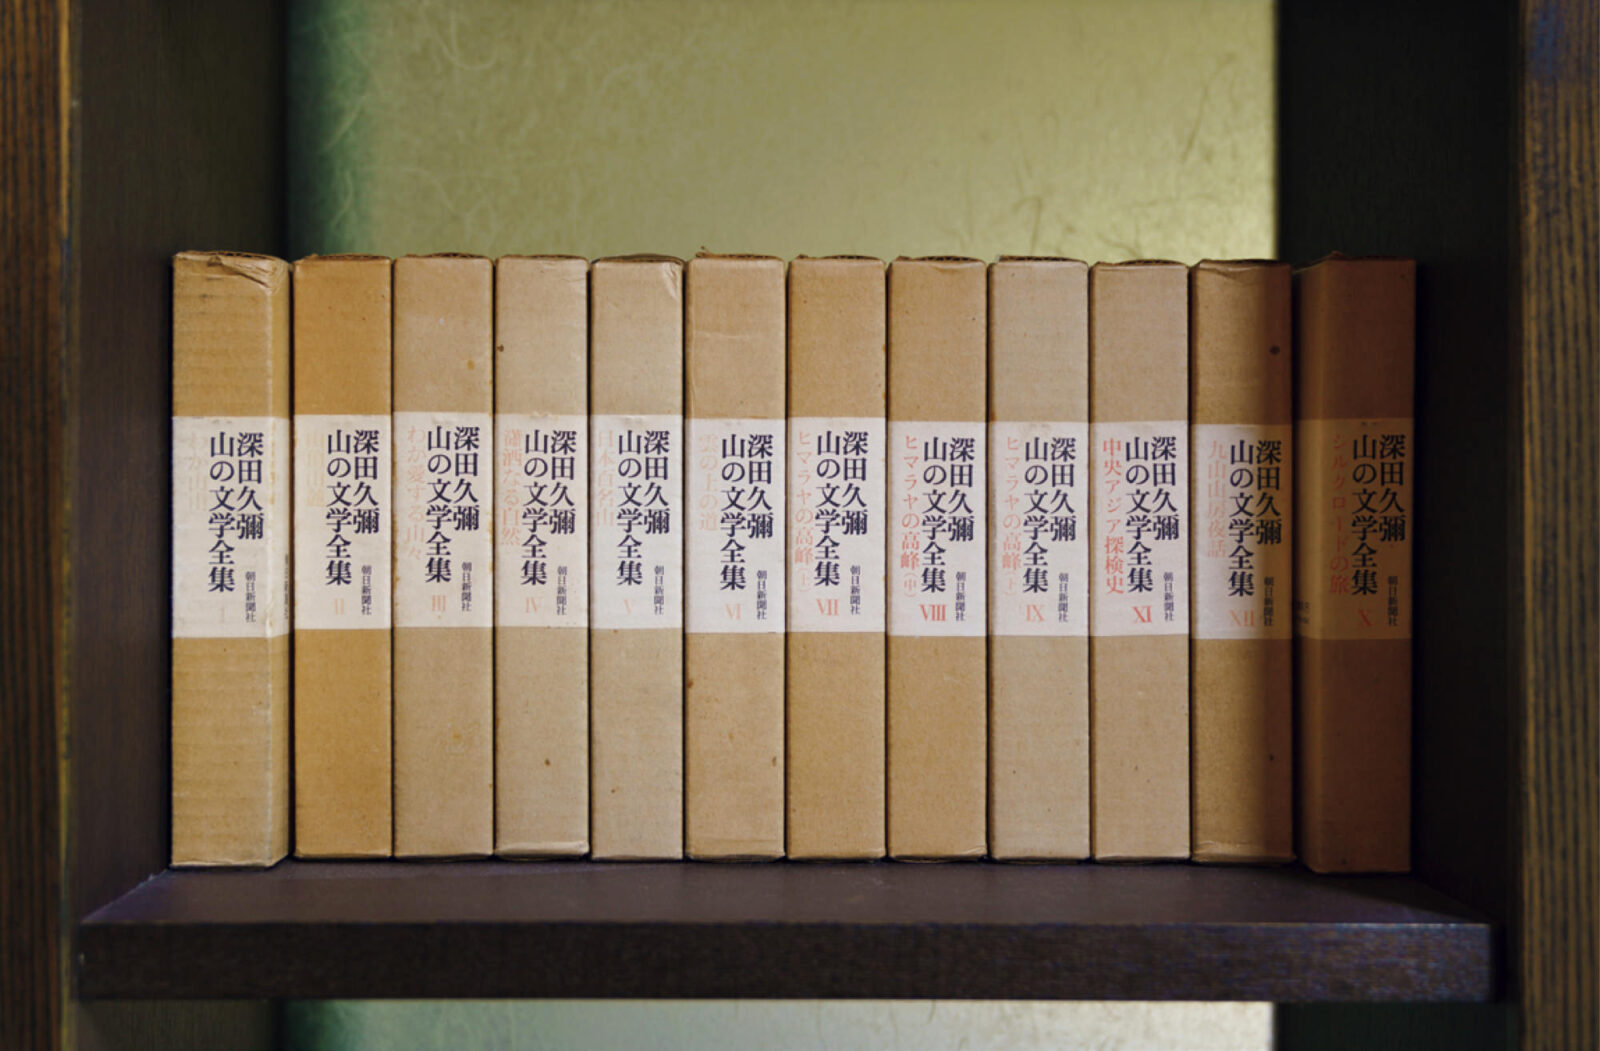 変若水の湯 つたや（月山志津温泉／山形県）ライブラリーには出羽三山の歴史にまつわる貴重本のほか､山岳関係書籍も多い